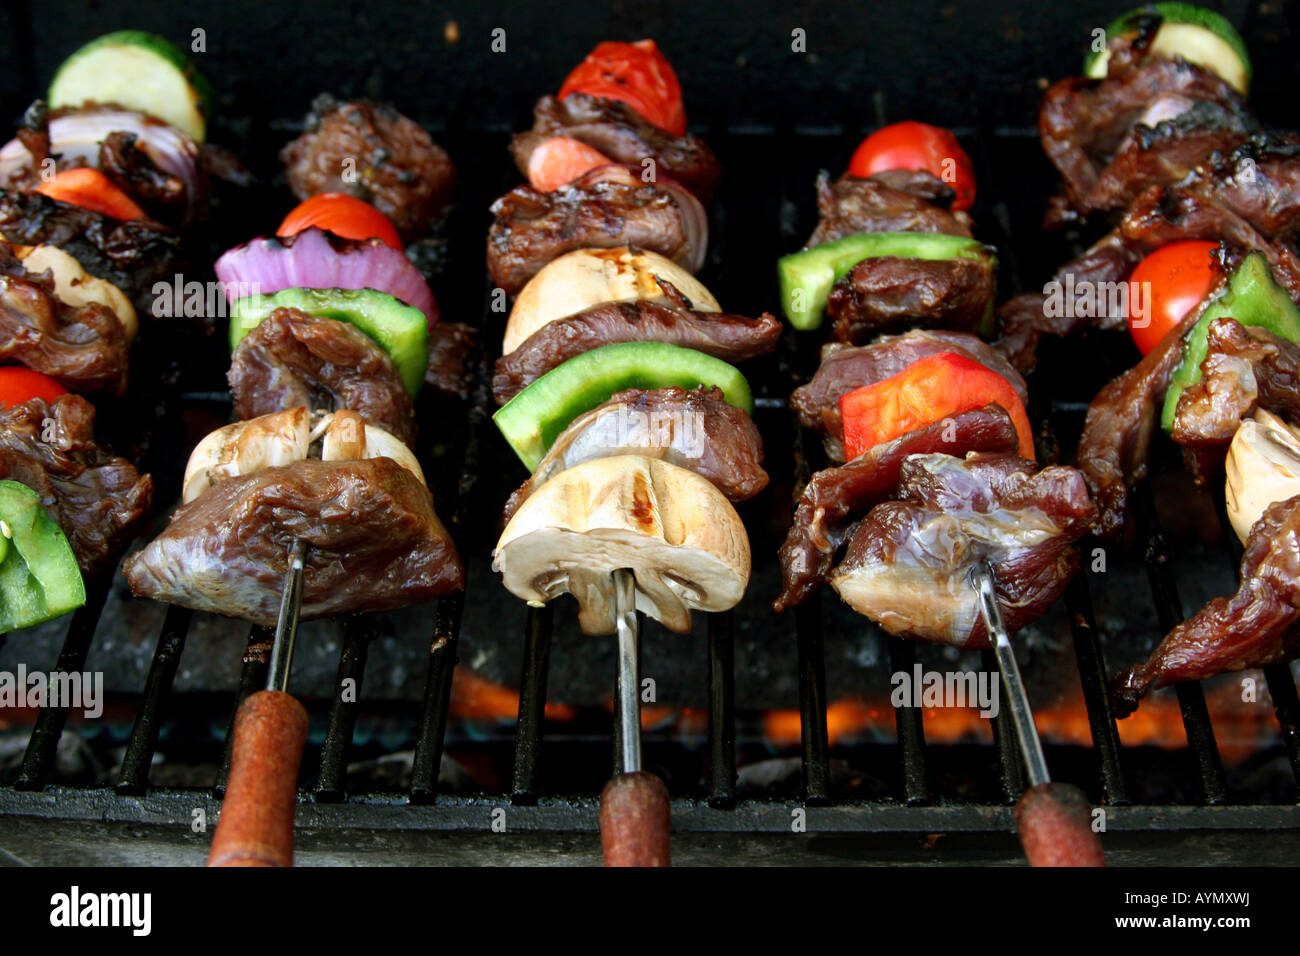 Vue avant du bois barbecue avec viande et légumes Banque D'Images